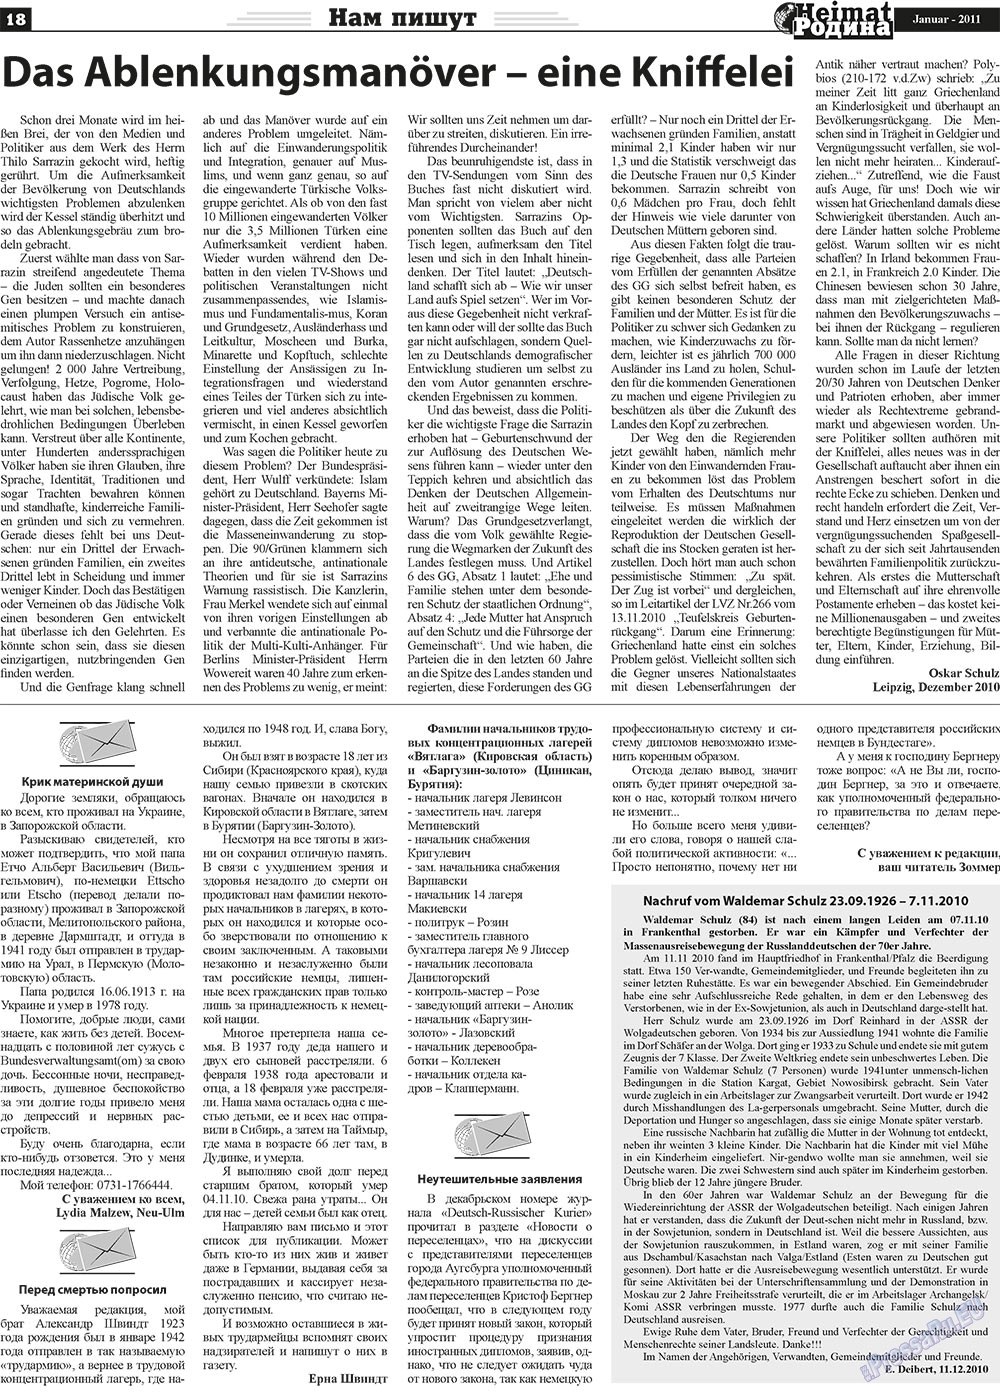 Heimat-Родина (газета). 2011 год, номер 1, стр. 18